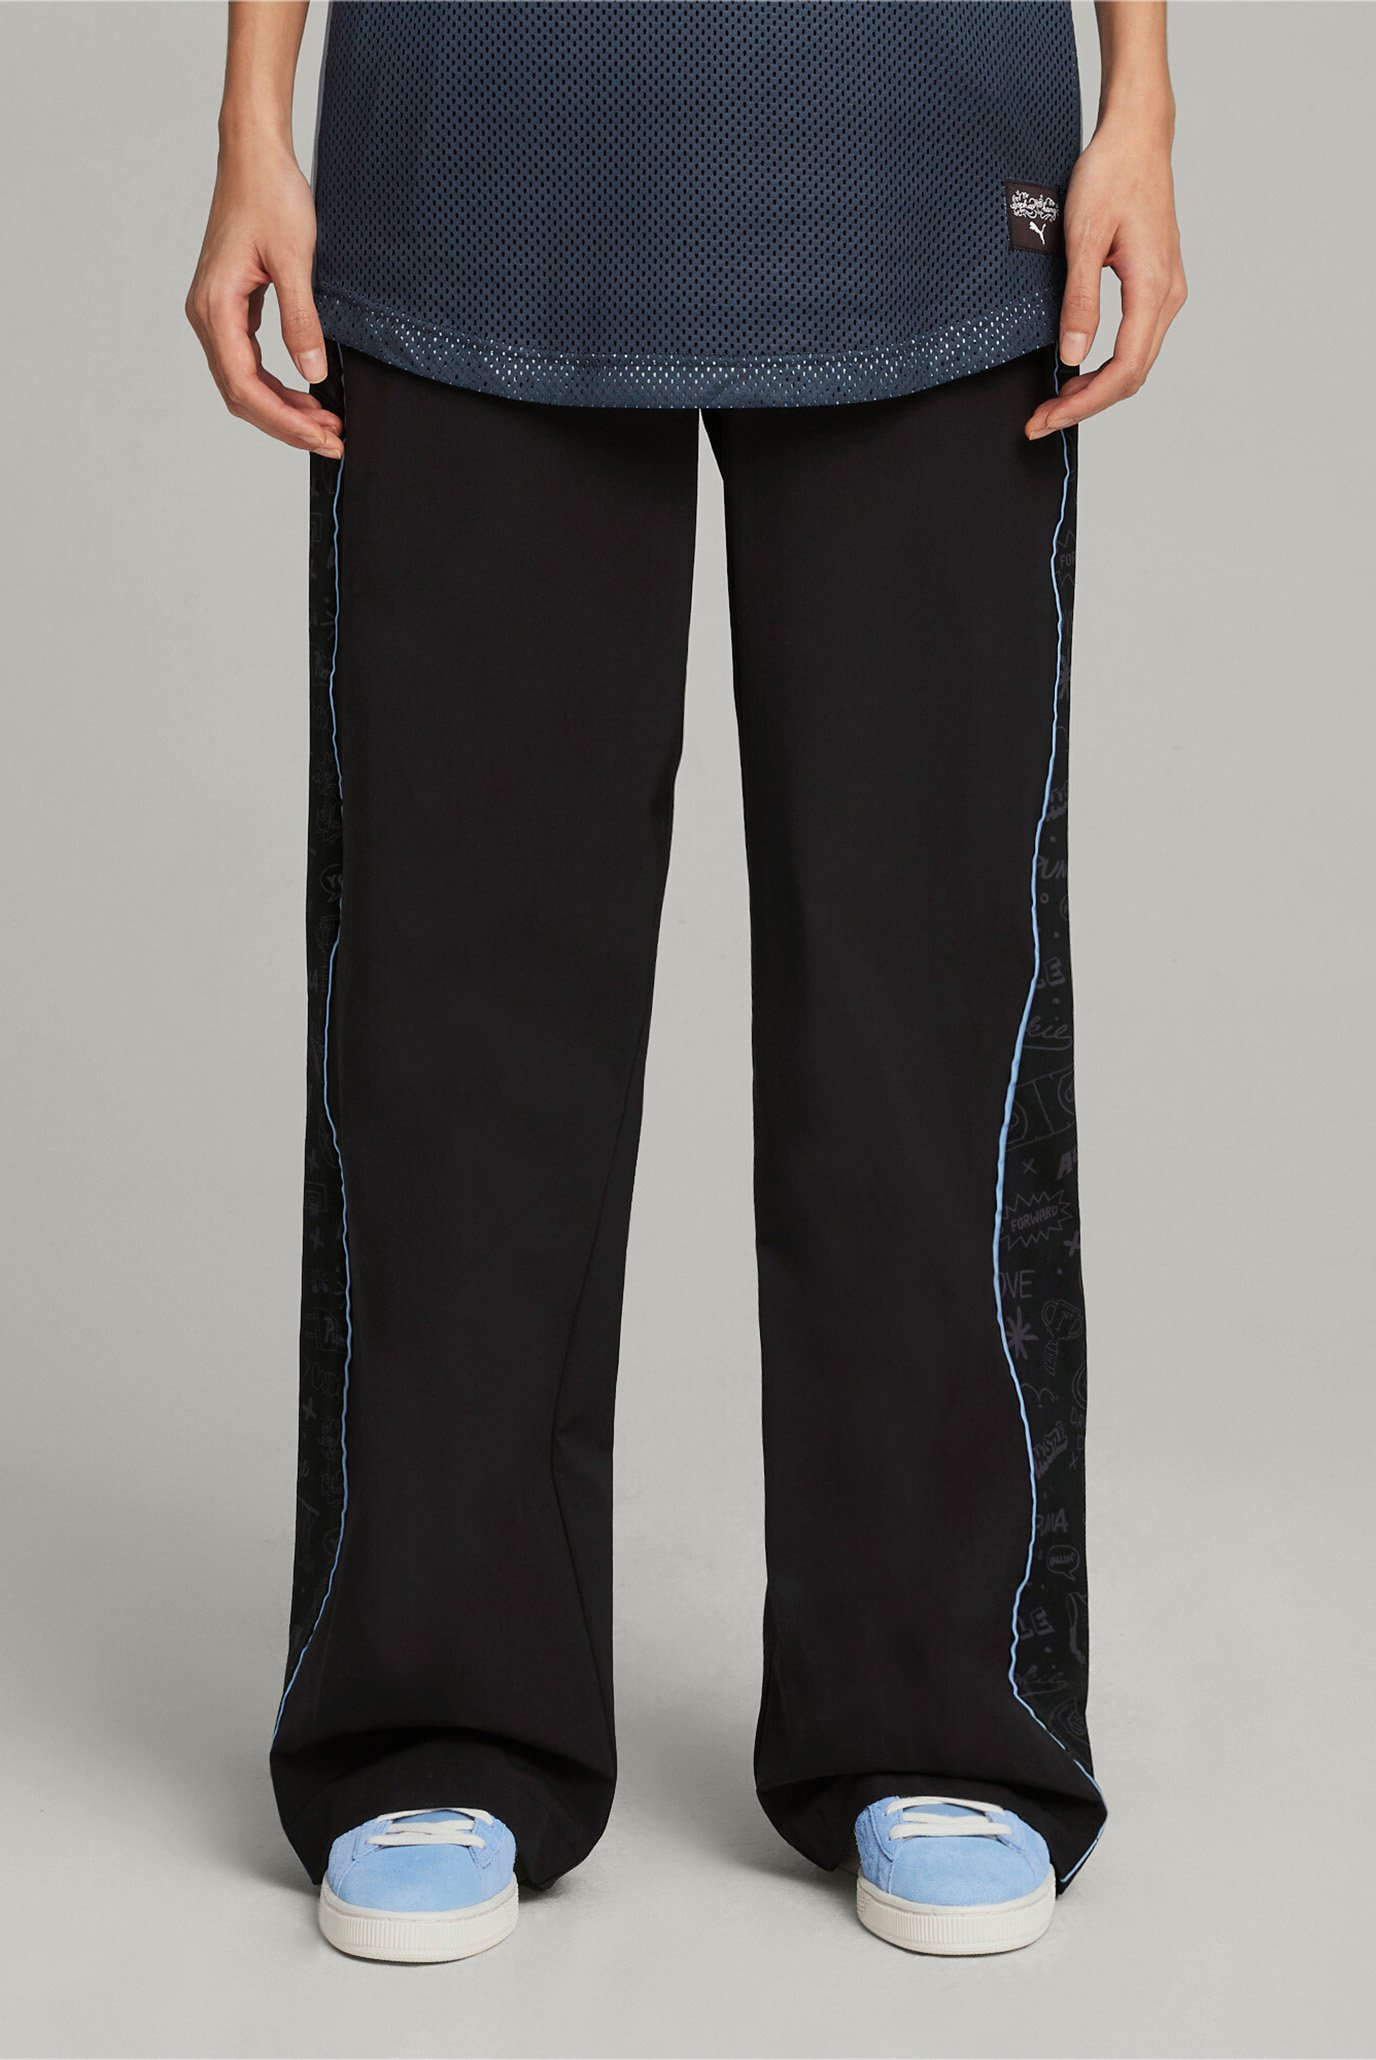 Жіночі чорні спортивні штани PUMA x SOPHIA CHANG Women's Pants 1